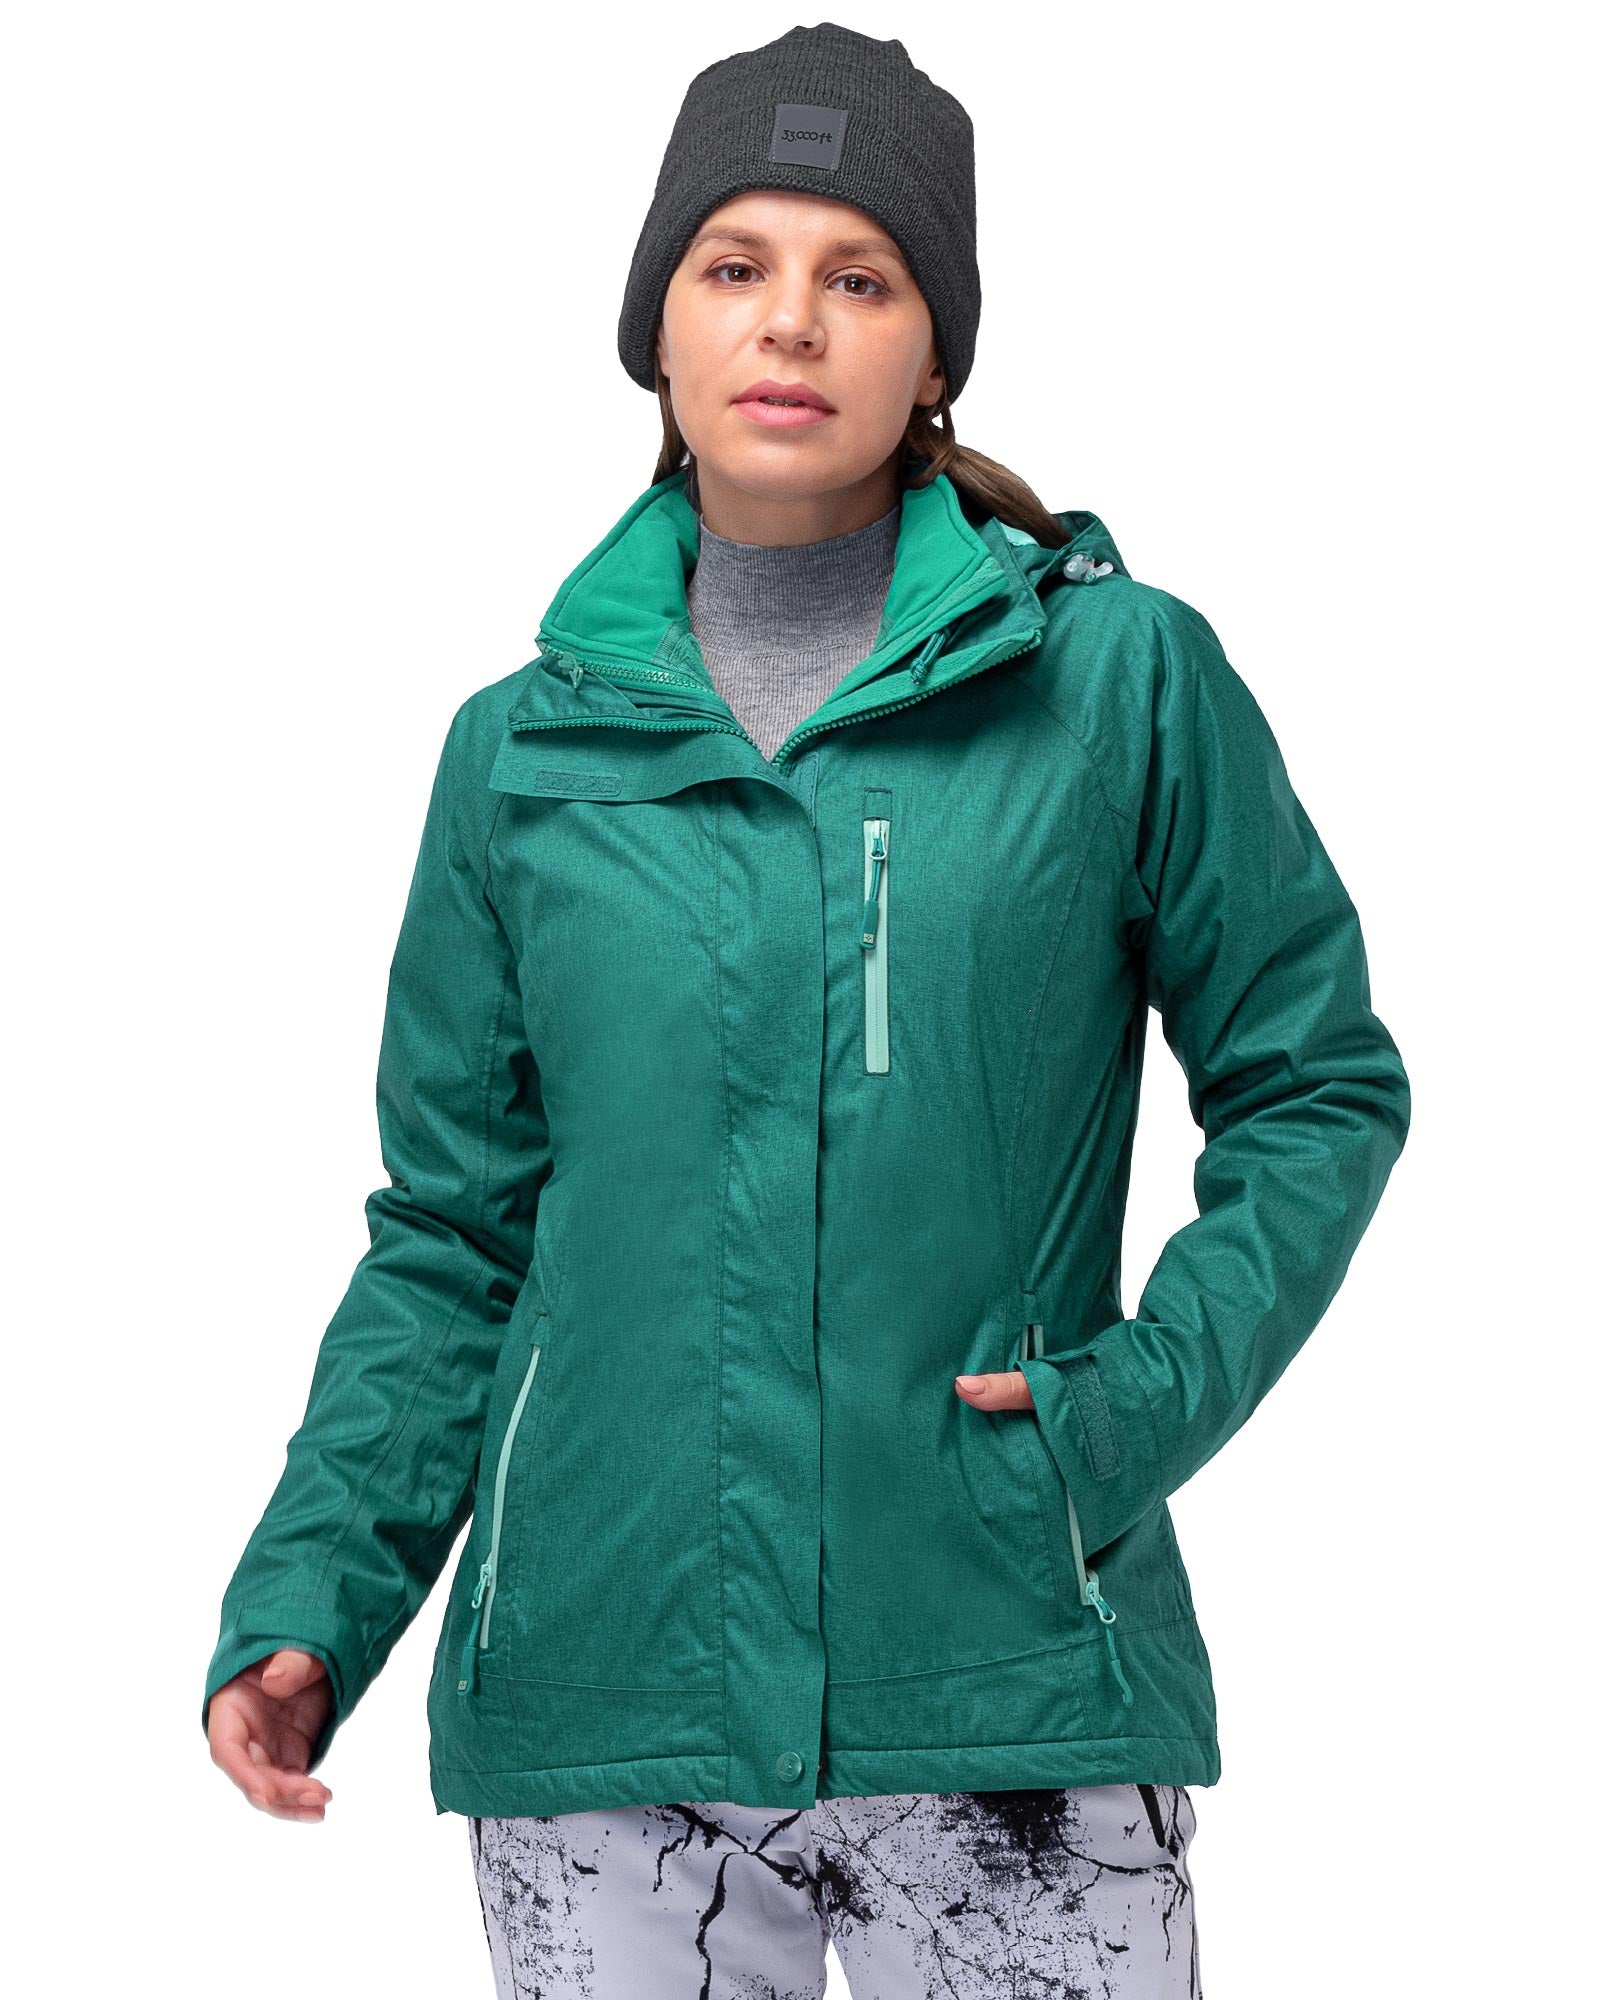 XZNGL Fleece Jacket Women Women Detachable Cap Waterproof and Windproof  Thick Three-In-One Jacket Outdoor Sports Warm Jacket Women Jacket Winter 